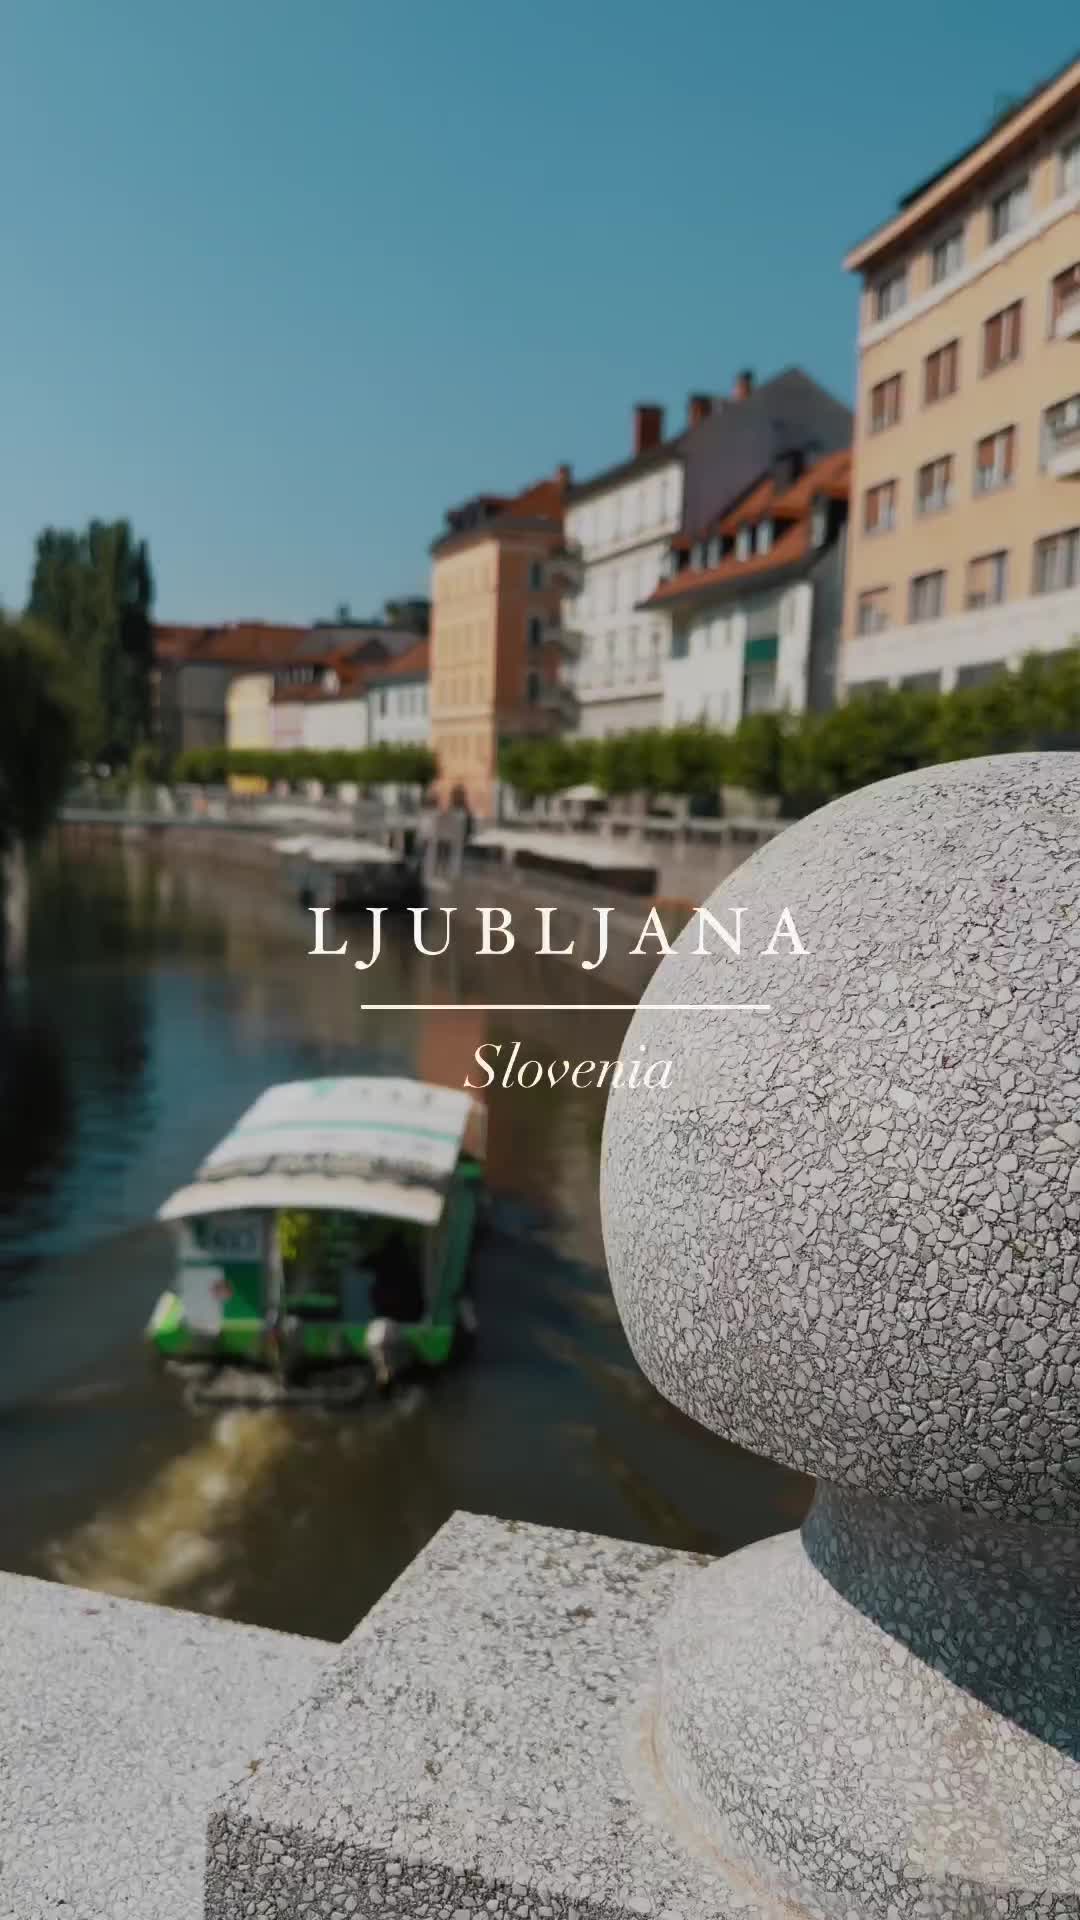 Discover the Dragons of Ljubljana, Slovenia